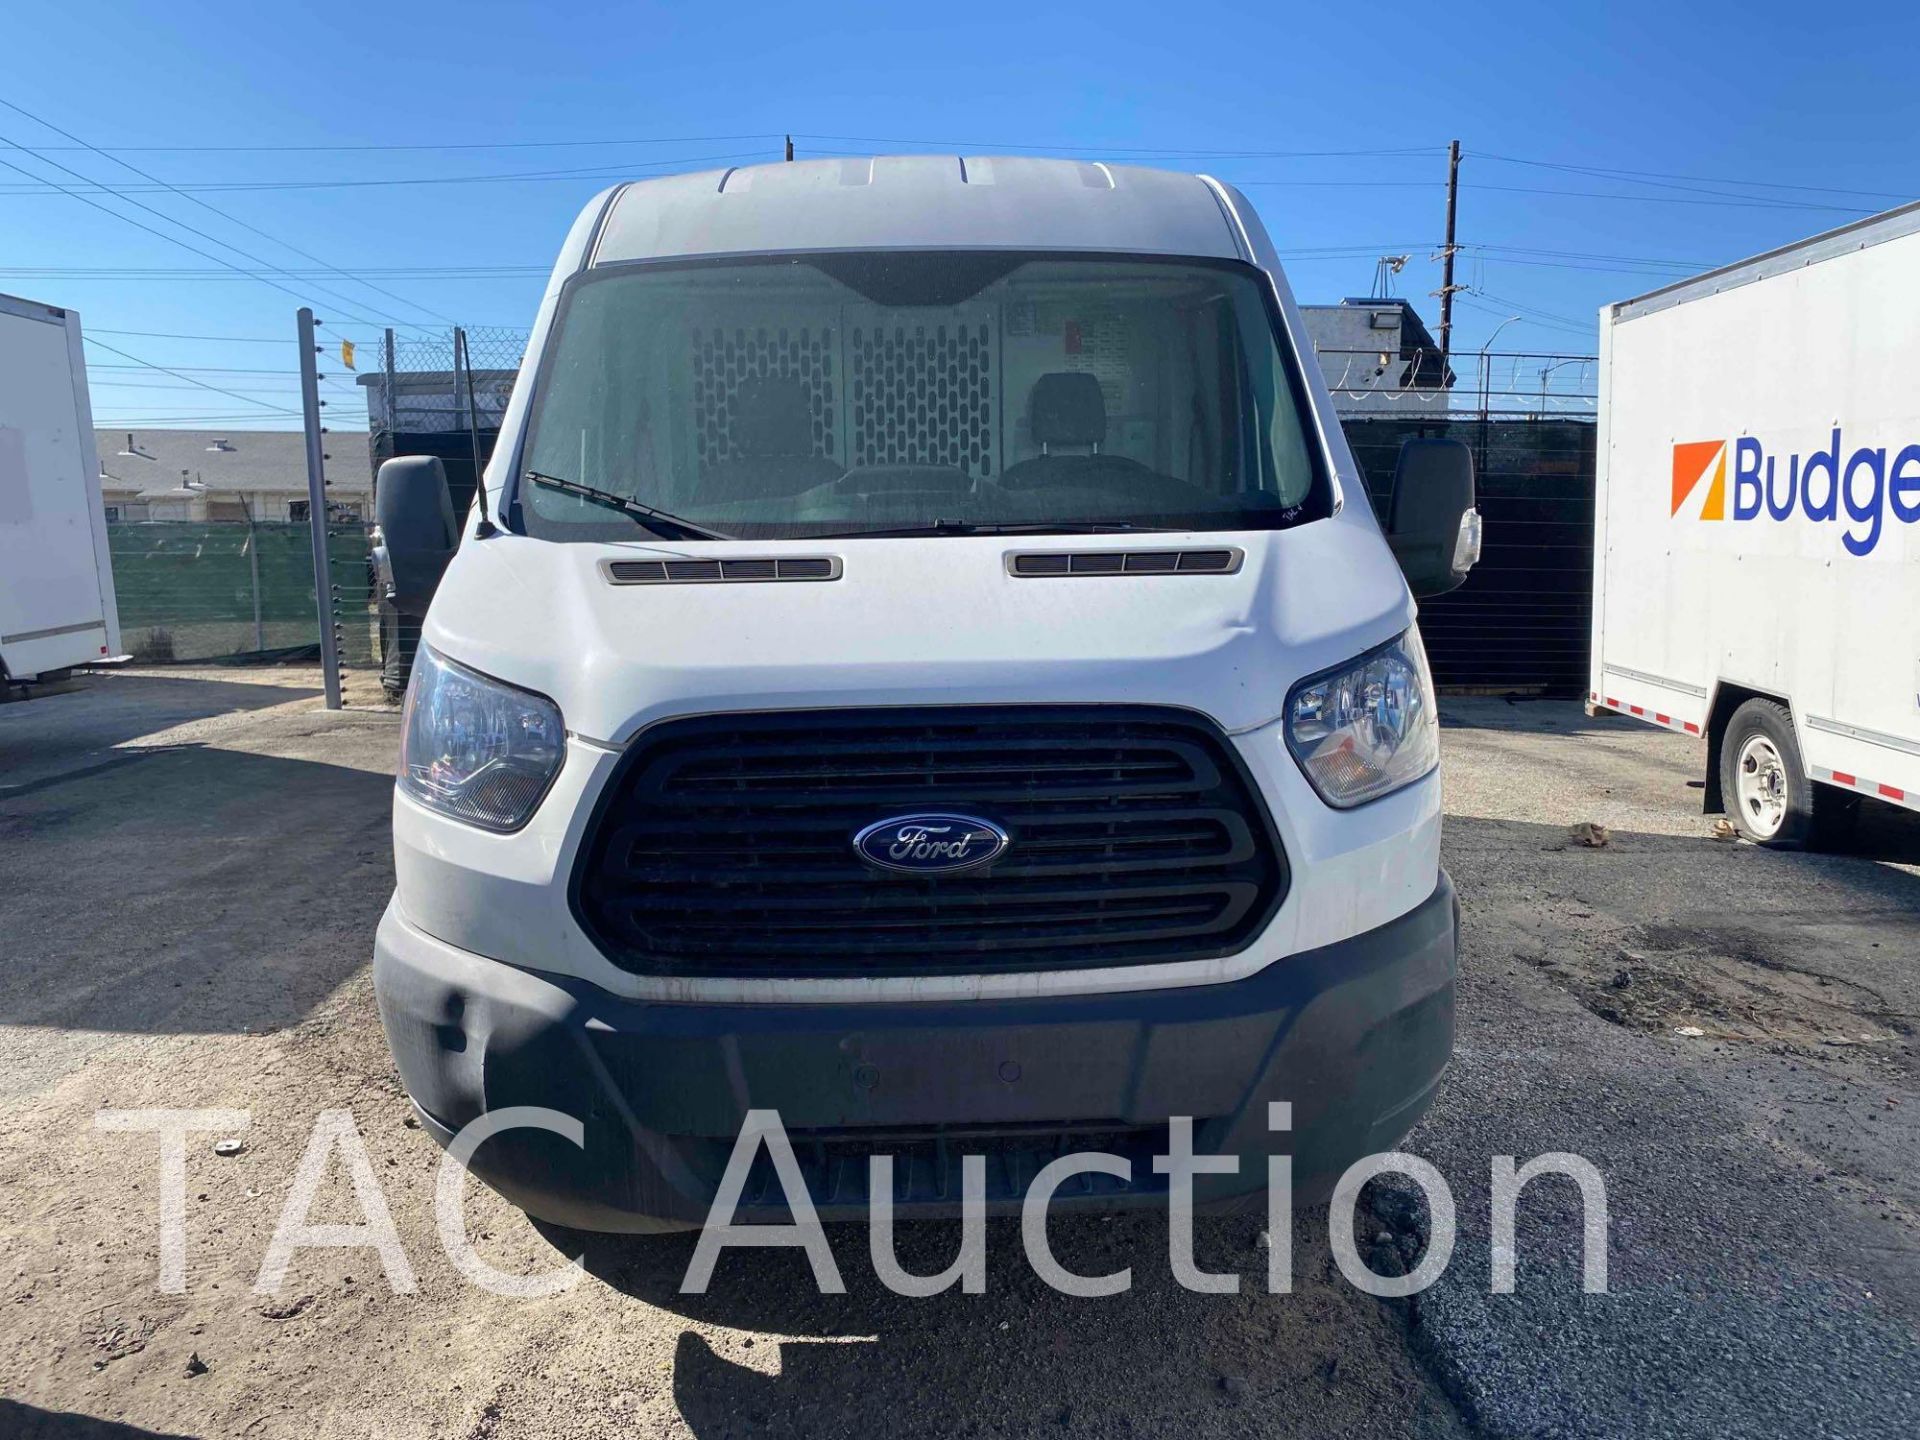 2019 Ford Transit 150 Cargo Van - Image 2 of 56